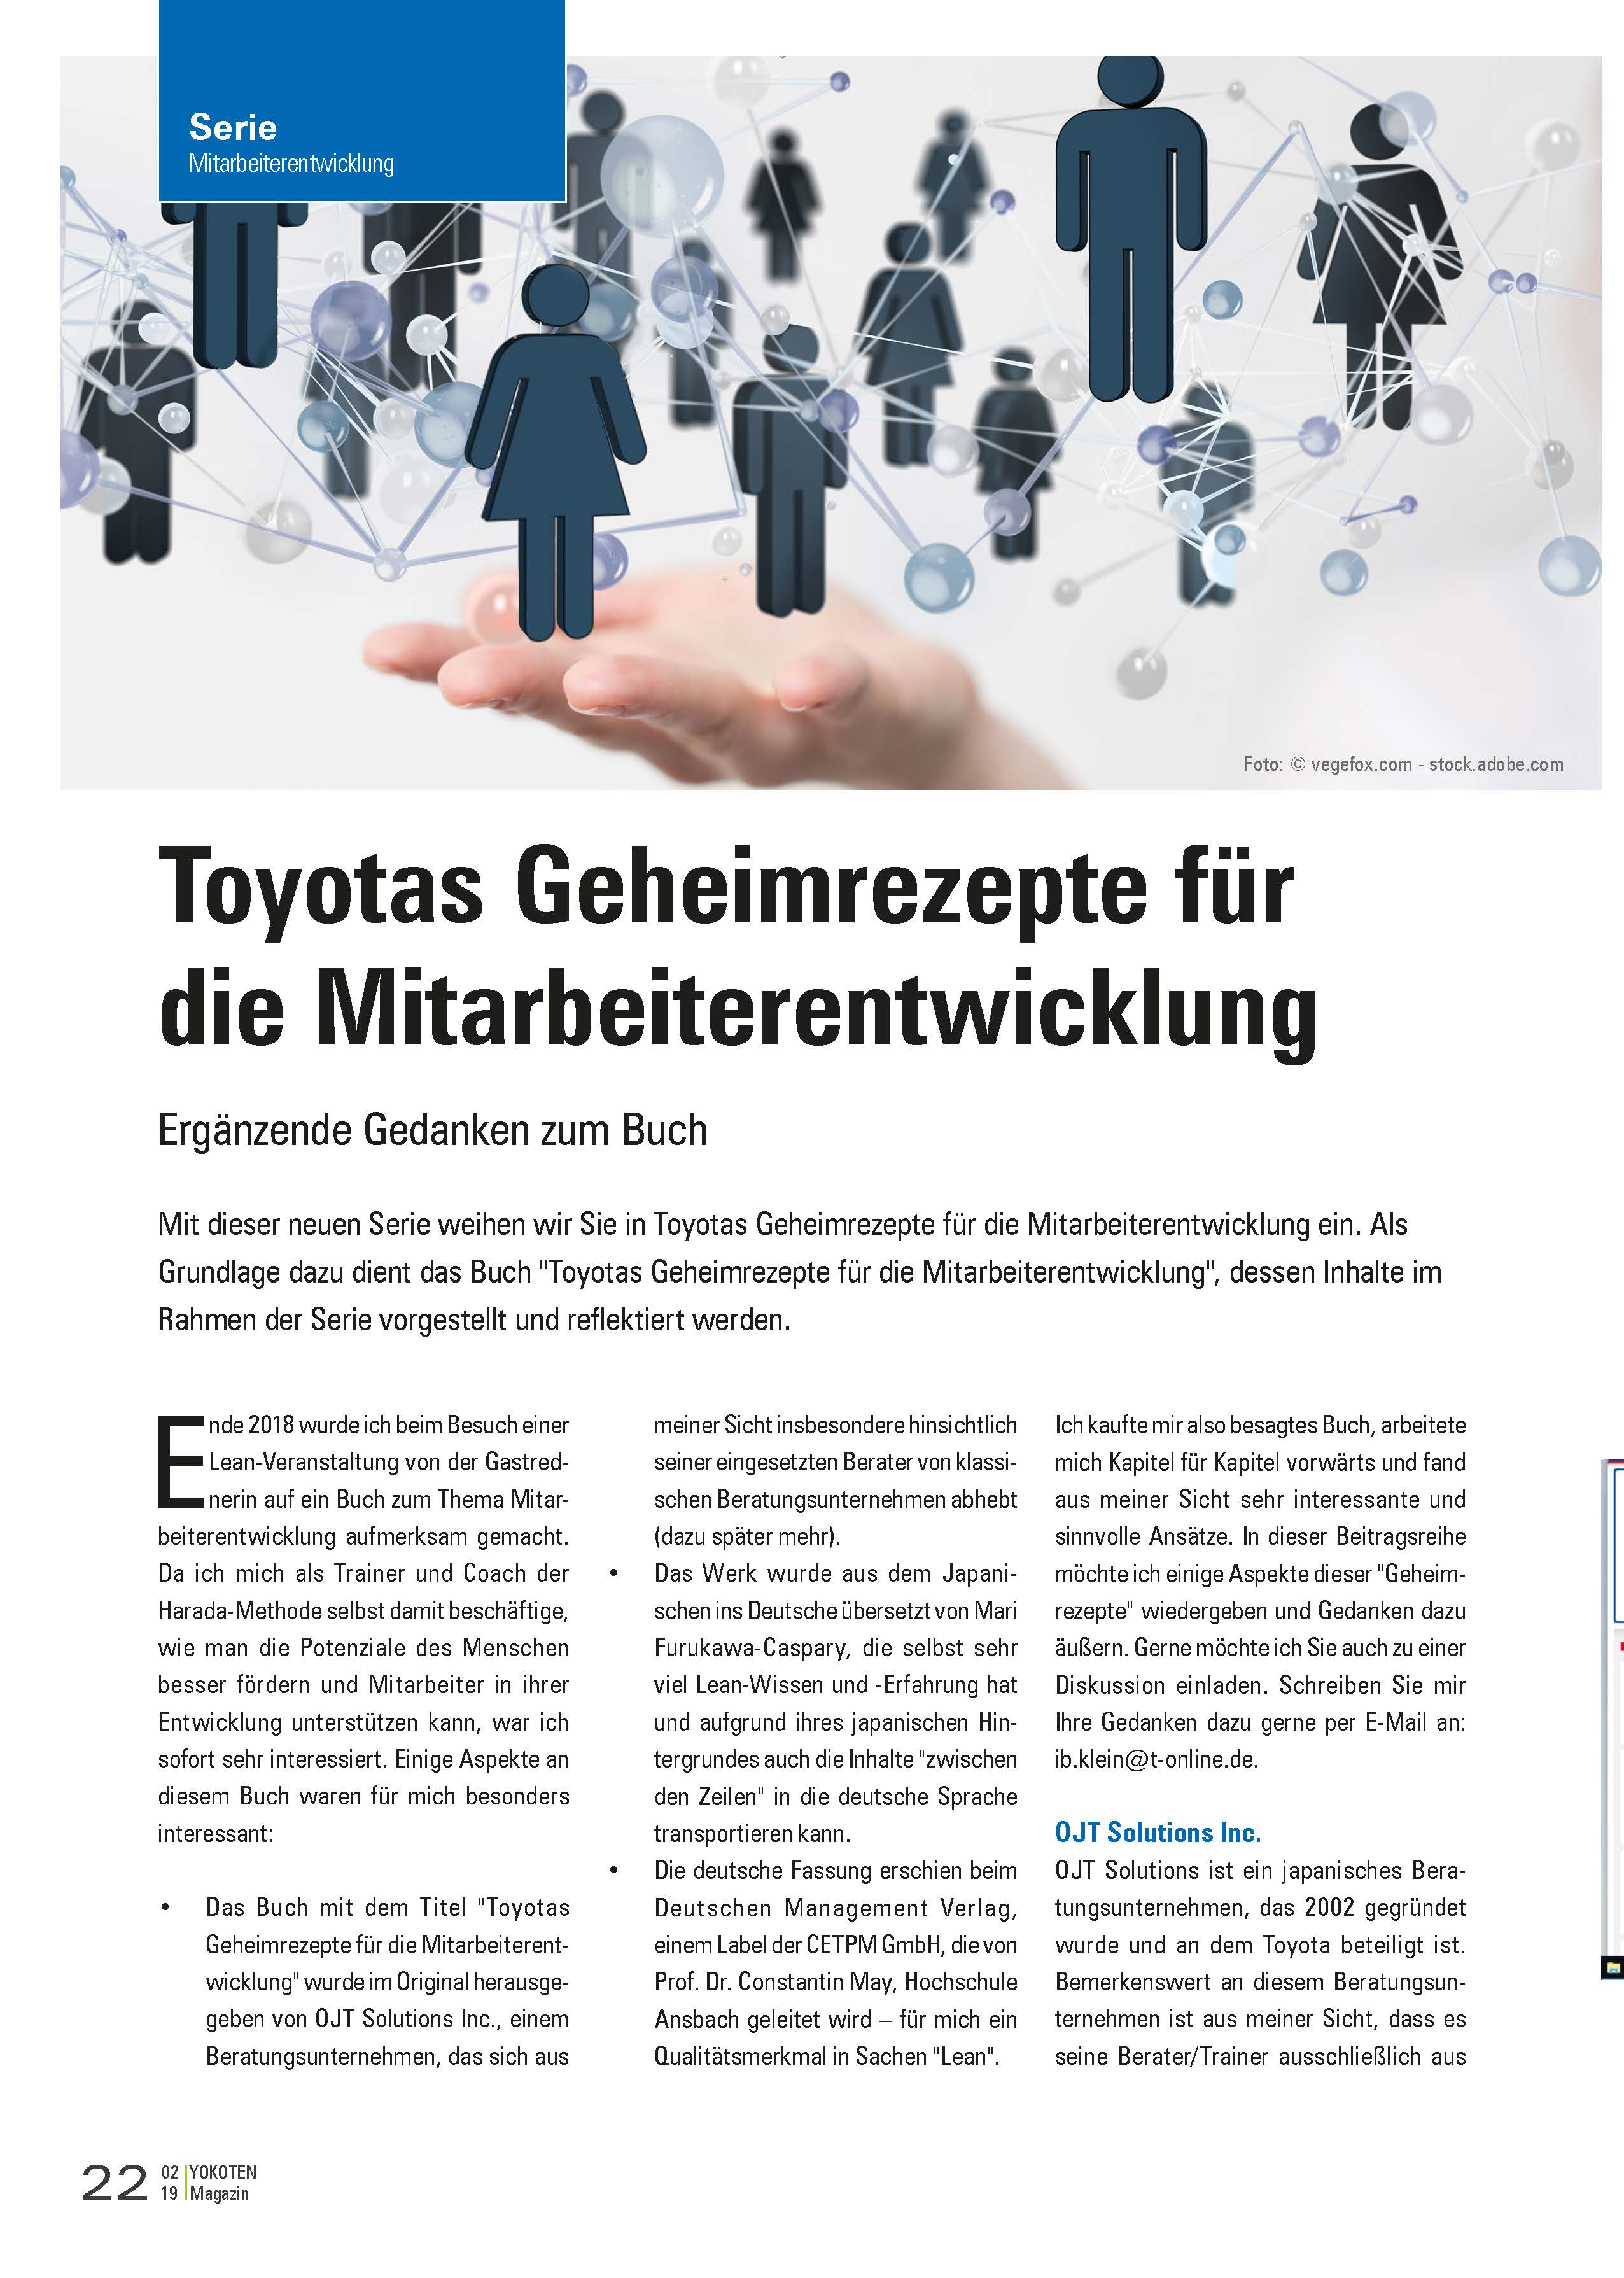 Toyotas Geheimrezepte für die Mitarbeiterentwicklung - Artikel aus Fachmagazin YOKOTEN 2019-02